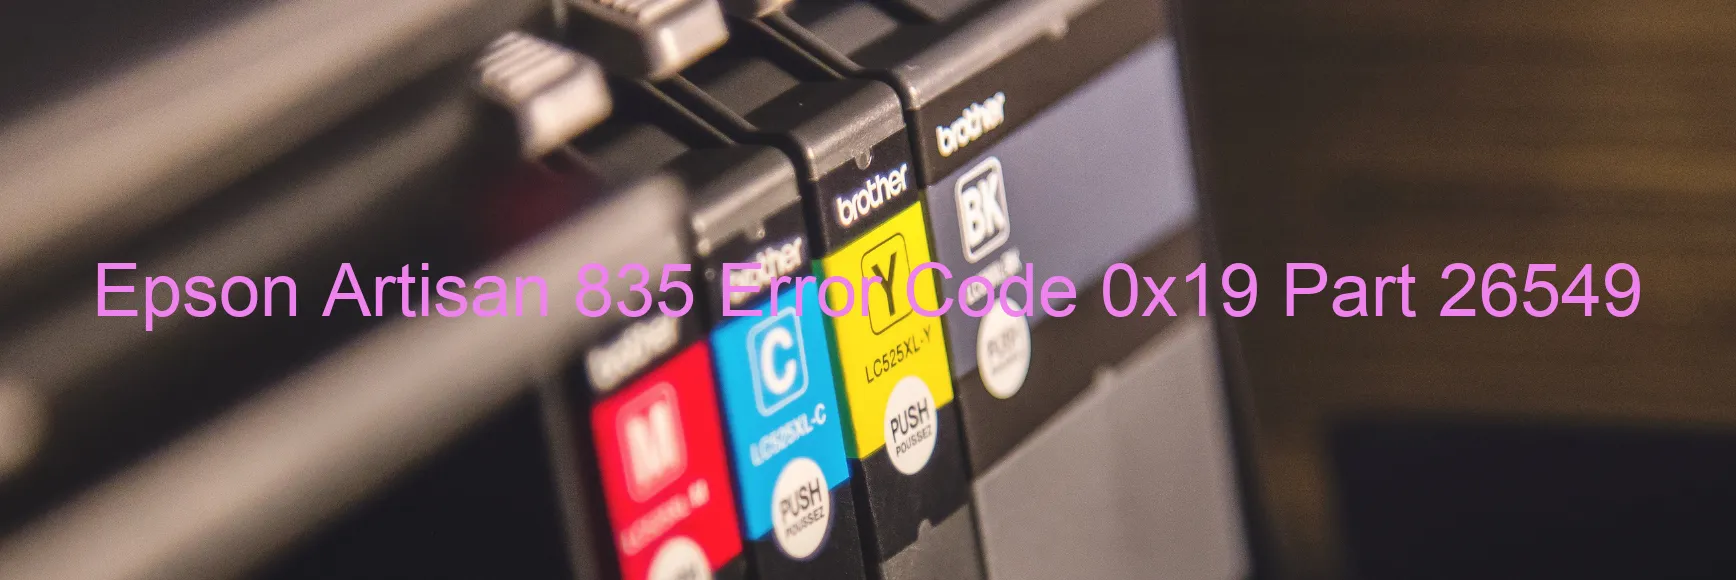 Epson Artisan 835 Error 0x19